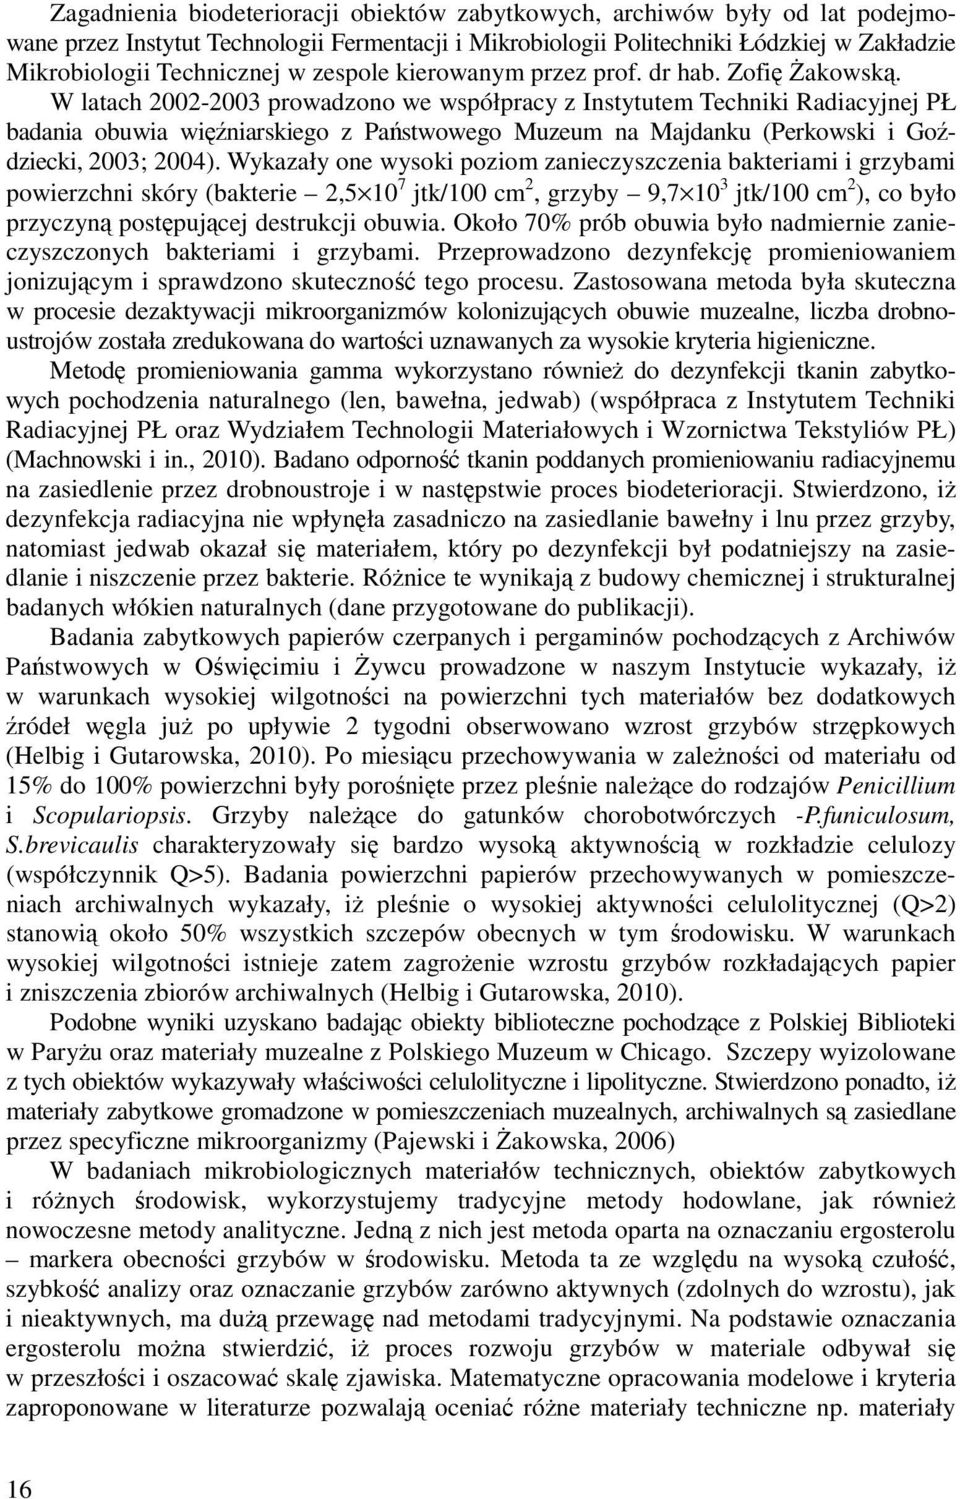 W latach 2002-2003 prowadzono we współpracy z Instytutem Techniki Radiacyjnej PŁ badania obuwia winiarskiego z Pastwowego Muzeum na Majdanku (Perkowski i Godziecki, 2003; 2004).